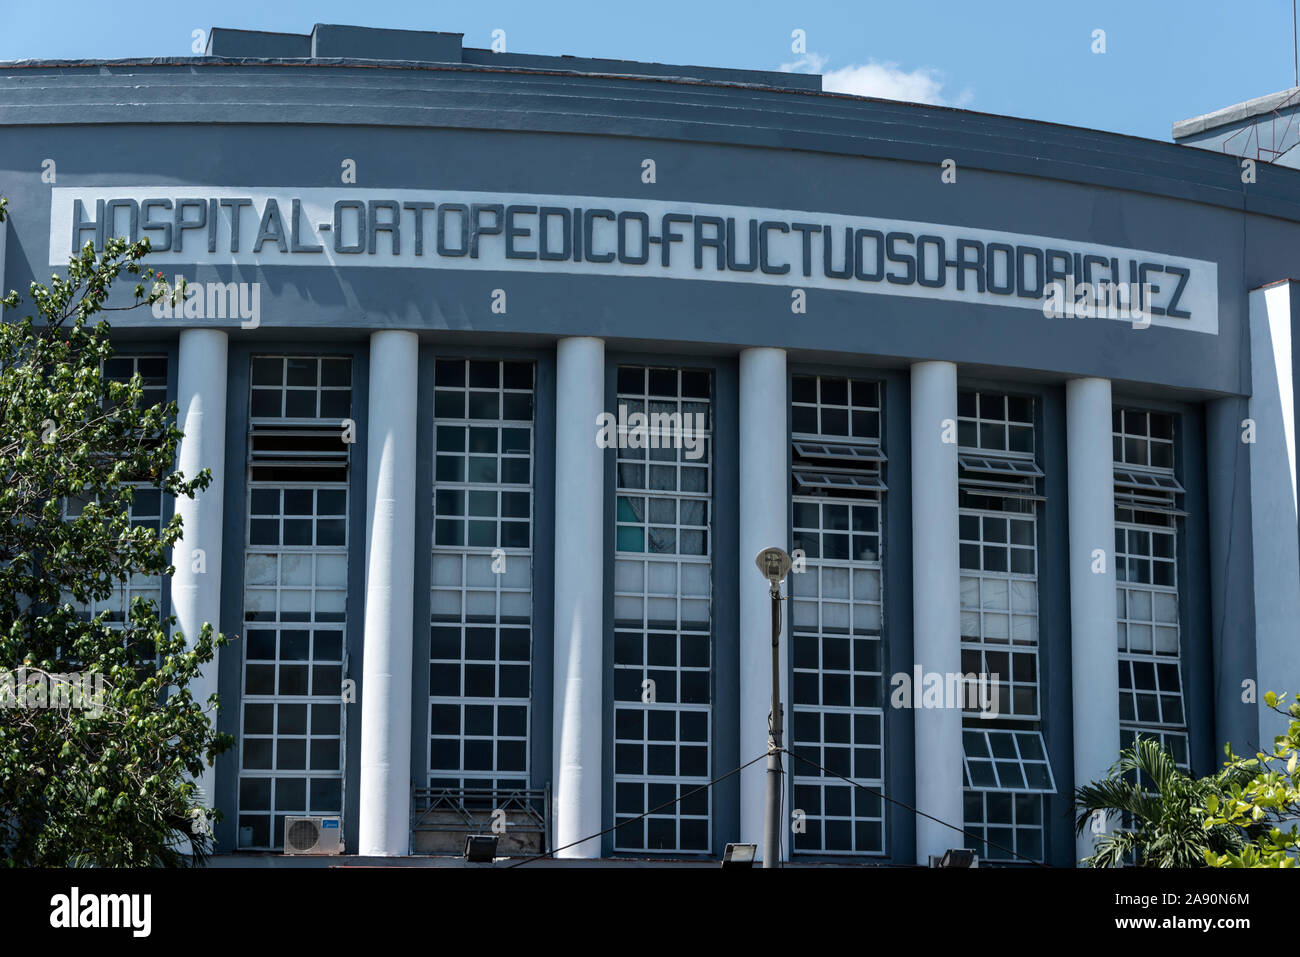 Hospital-Ortopedico-fructuoso-Rooriguez D-Cuba auf der Avenida de los Presidentes y calle 29, Plaza, Havanna, Kuba Stockfoto